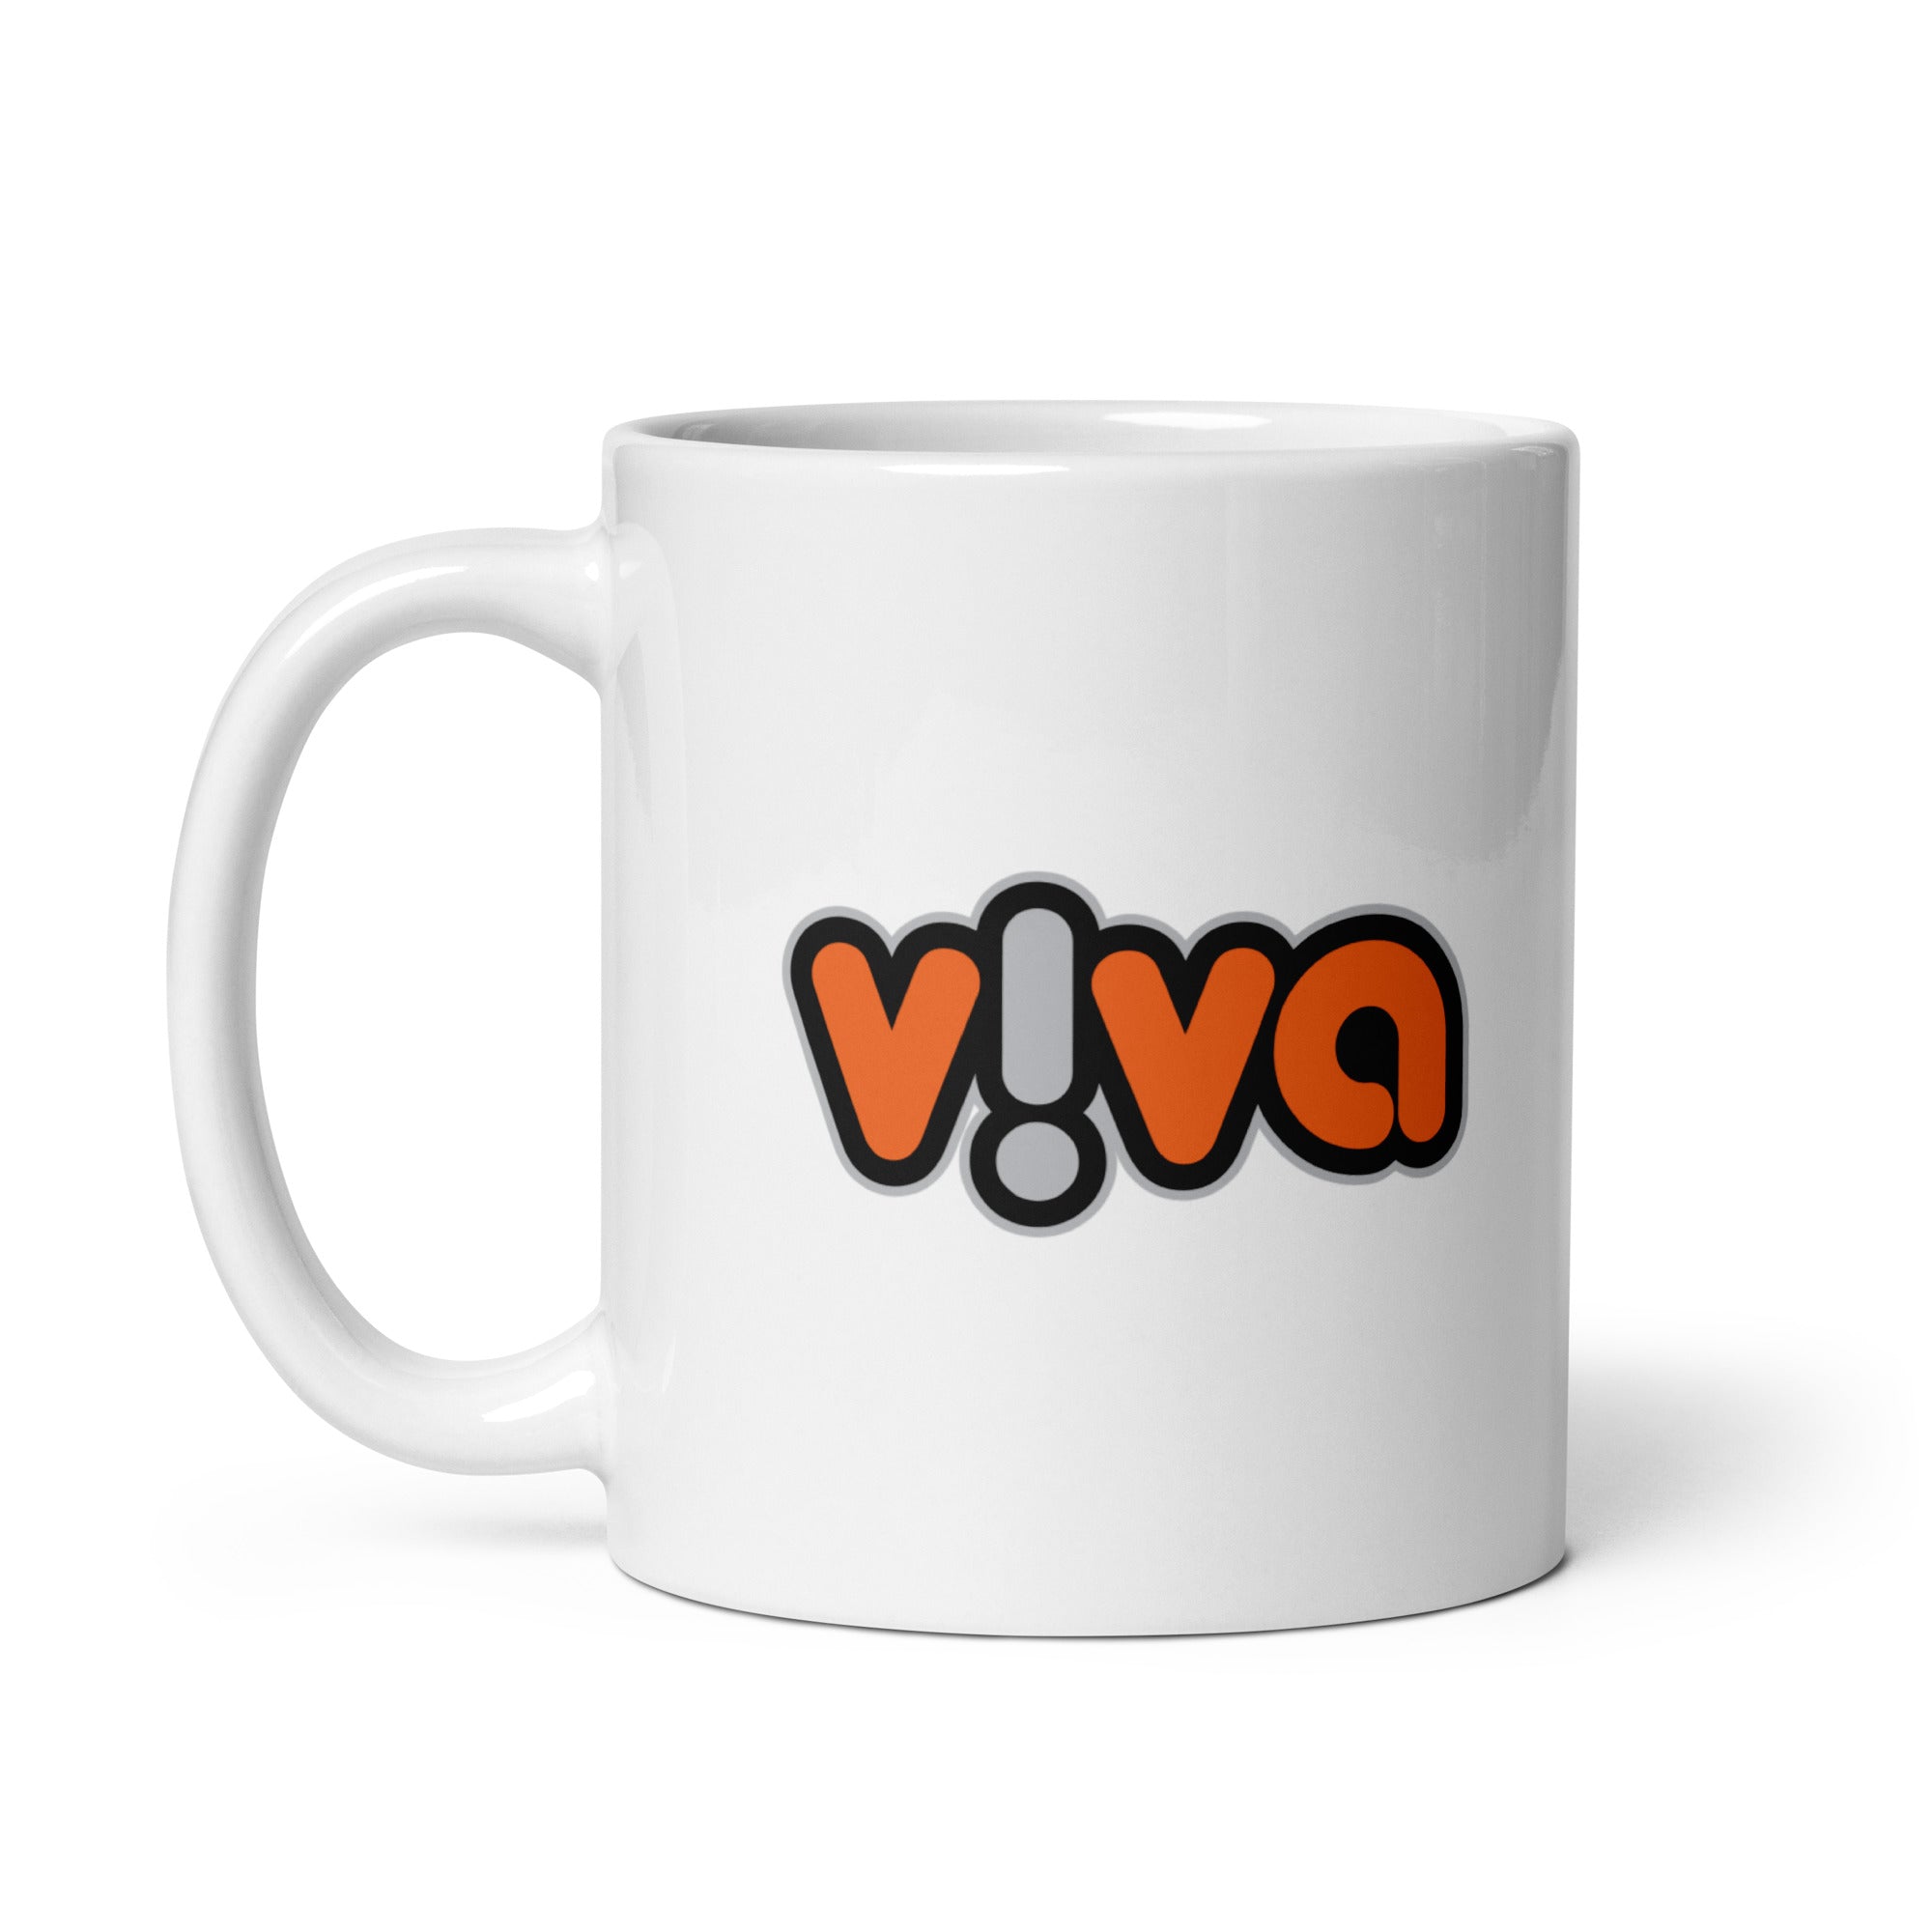 Viva: Mug